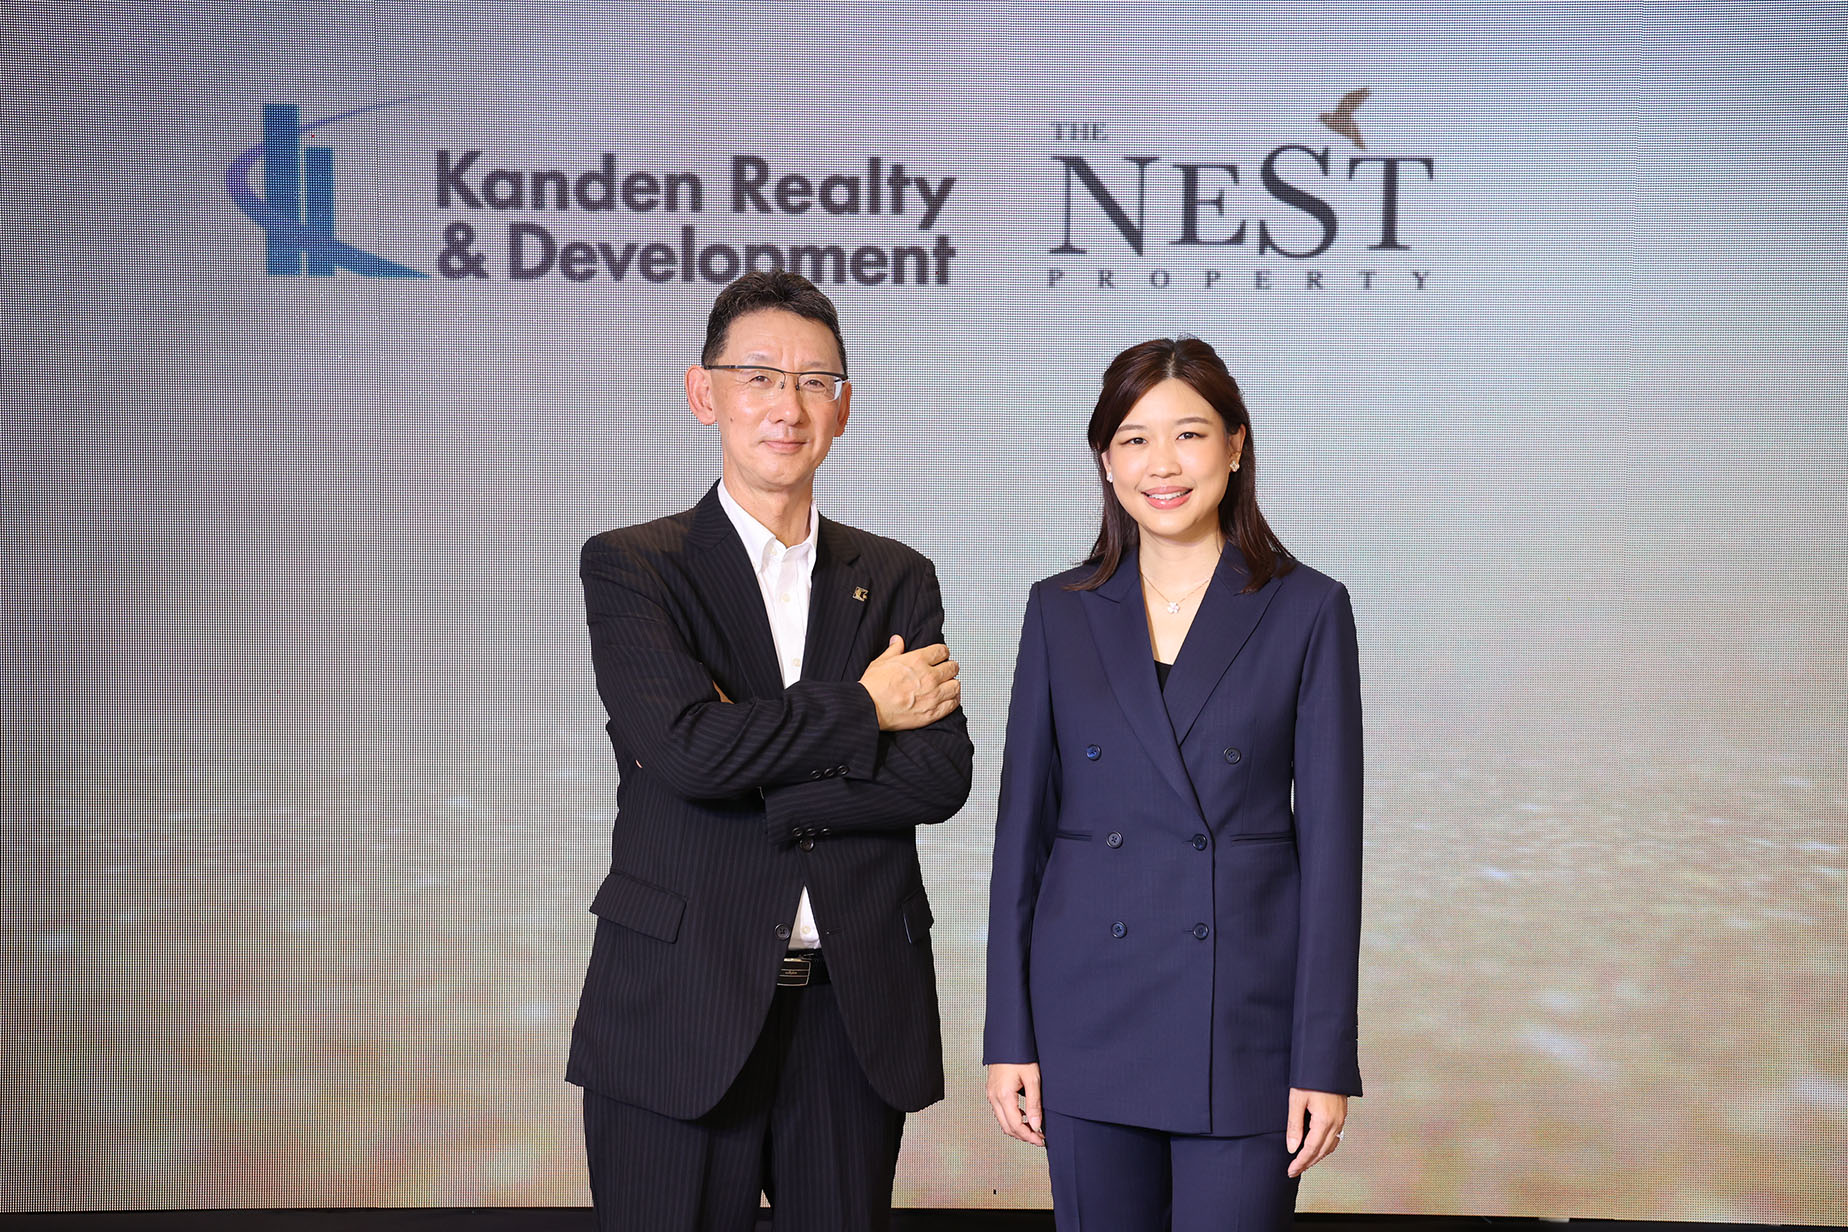 The Nest มั่นใจปี 66 ได้ปัจจัยบวกหนุนตลาดอสังหาฯ เติบโต ประกาศเปิด 2 โปรเจ็กต์ร่วมทุน KRD รวมมูลค่า 3,900 ล้านบาท